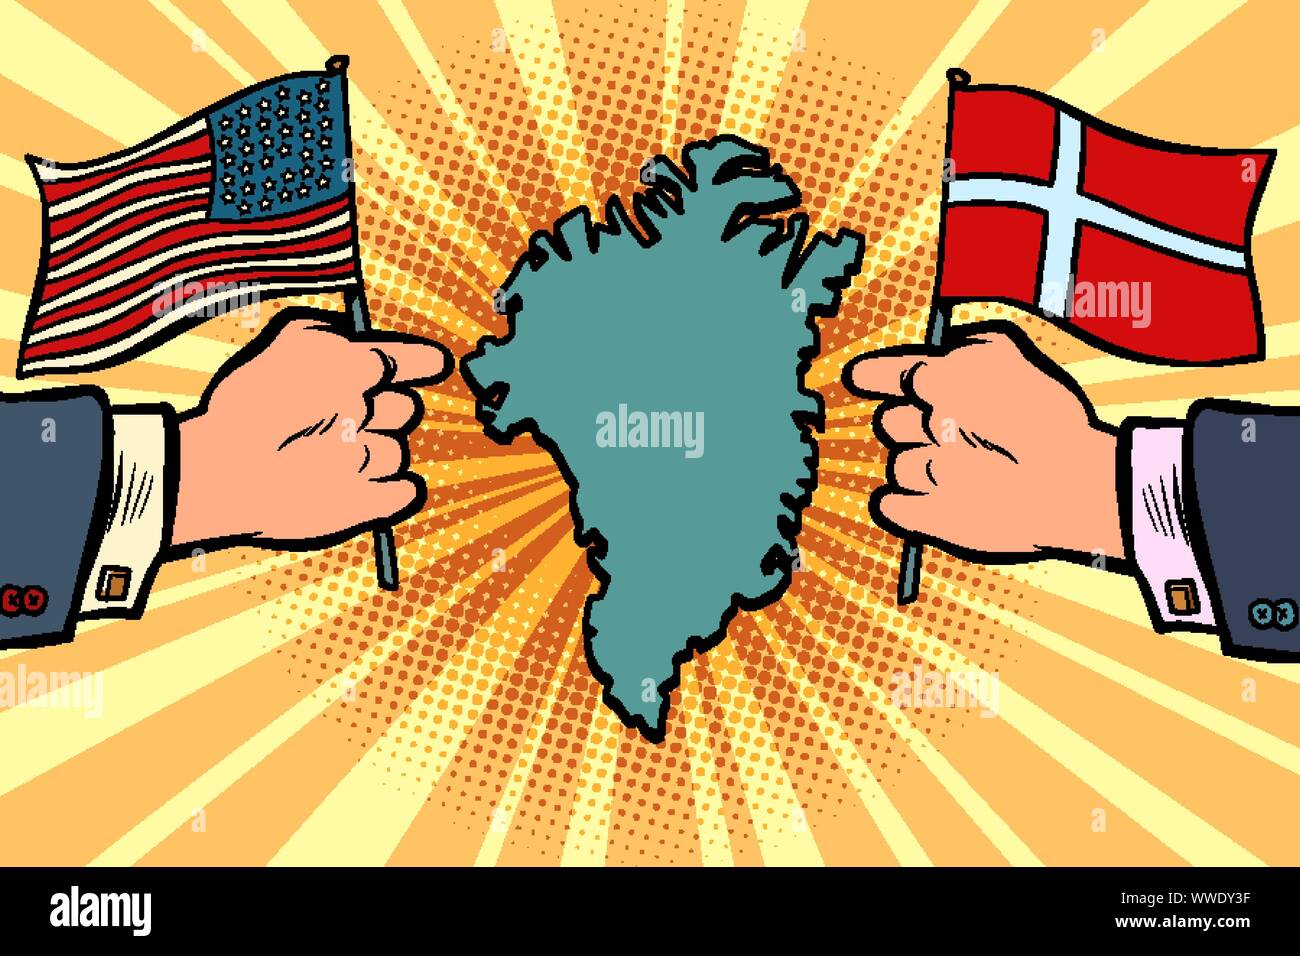 USA v. La Danimarca, la disputa per la Groenlandia. Le mani dei politici con le bandiere nazionali. comic cartoon arte pop retrò illustrazione vettoriale disegno Illustrazione Vettoriale